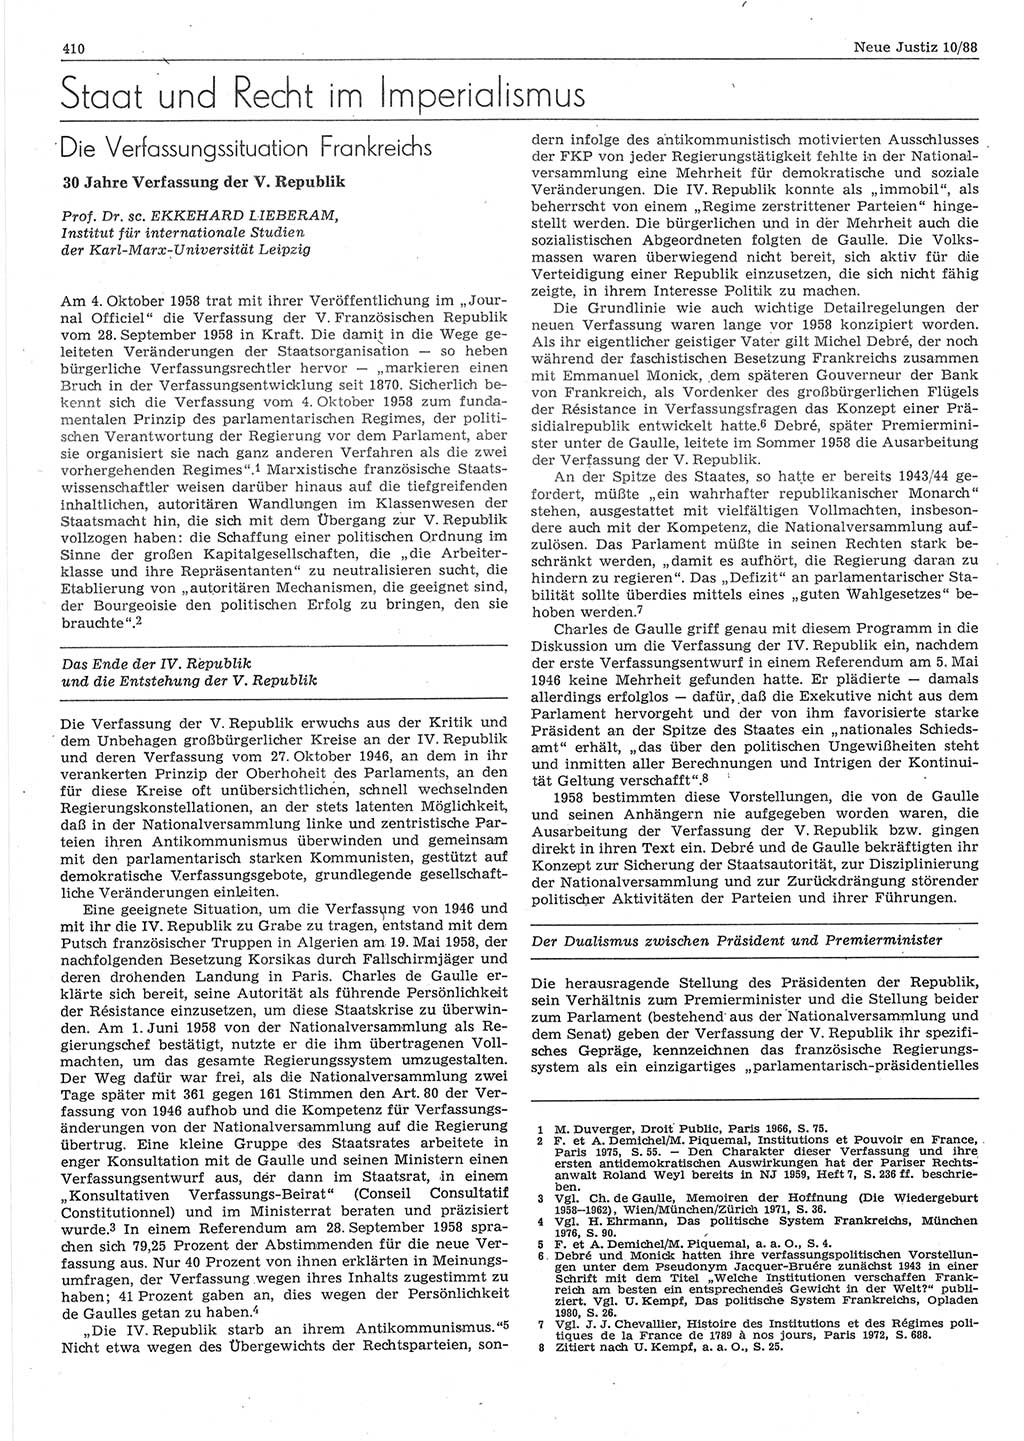 Neue Justiz (NJ), Zeitschrift für sozialistisches Recht und Gesetzlichkeit [Deutsche Demokratische Republik (DDR)], 42. Jahrgang 1988, Seite 410 (NJ DDR 1988, S. 410)